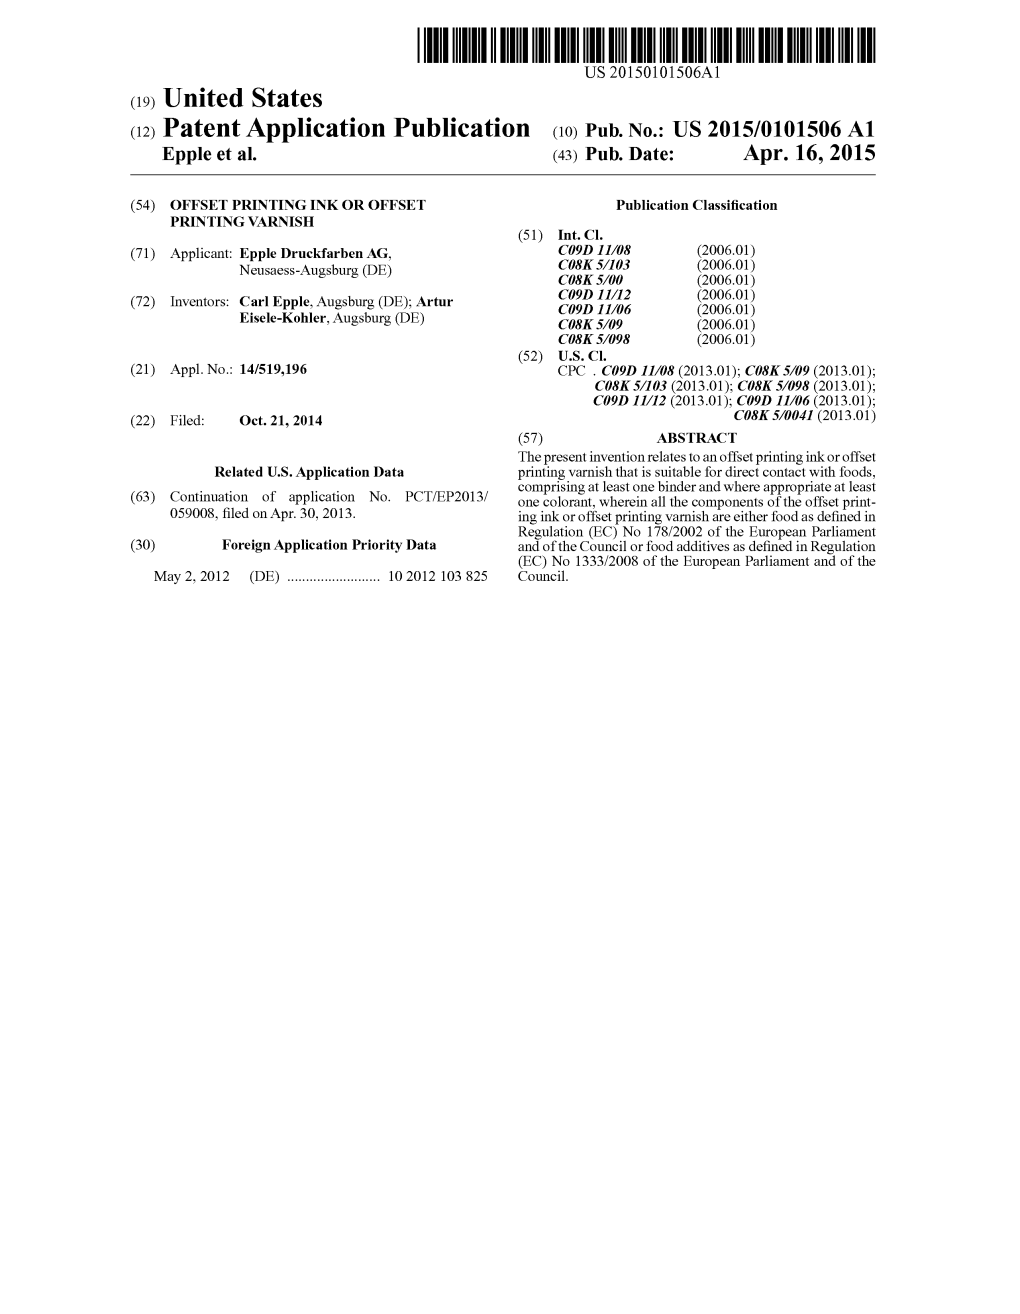 (12) Patent Application Publication (10) Pub. No.: US 2015/0101506 A1 Epple Et Al